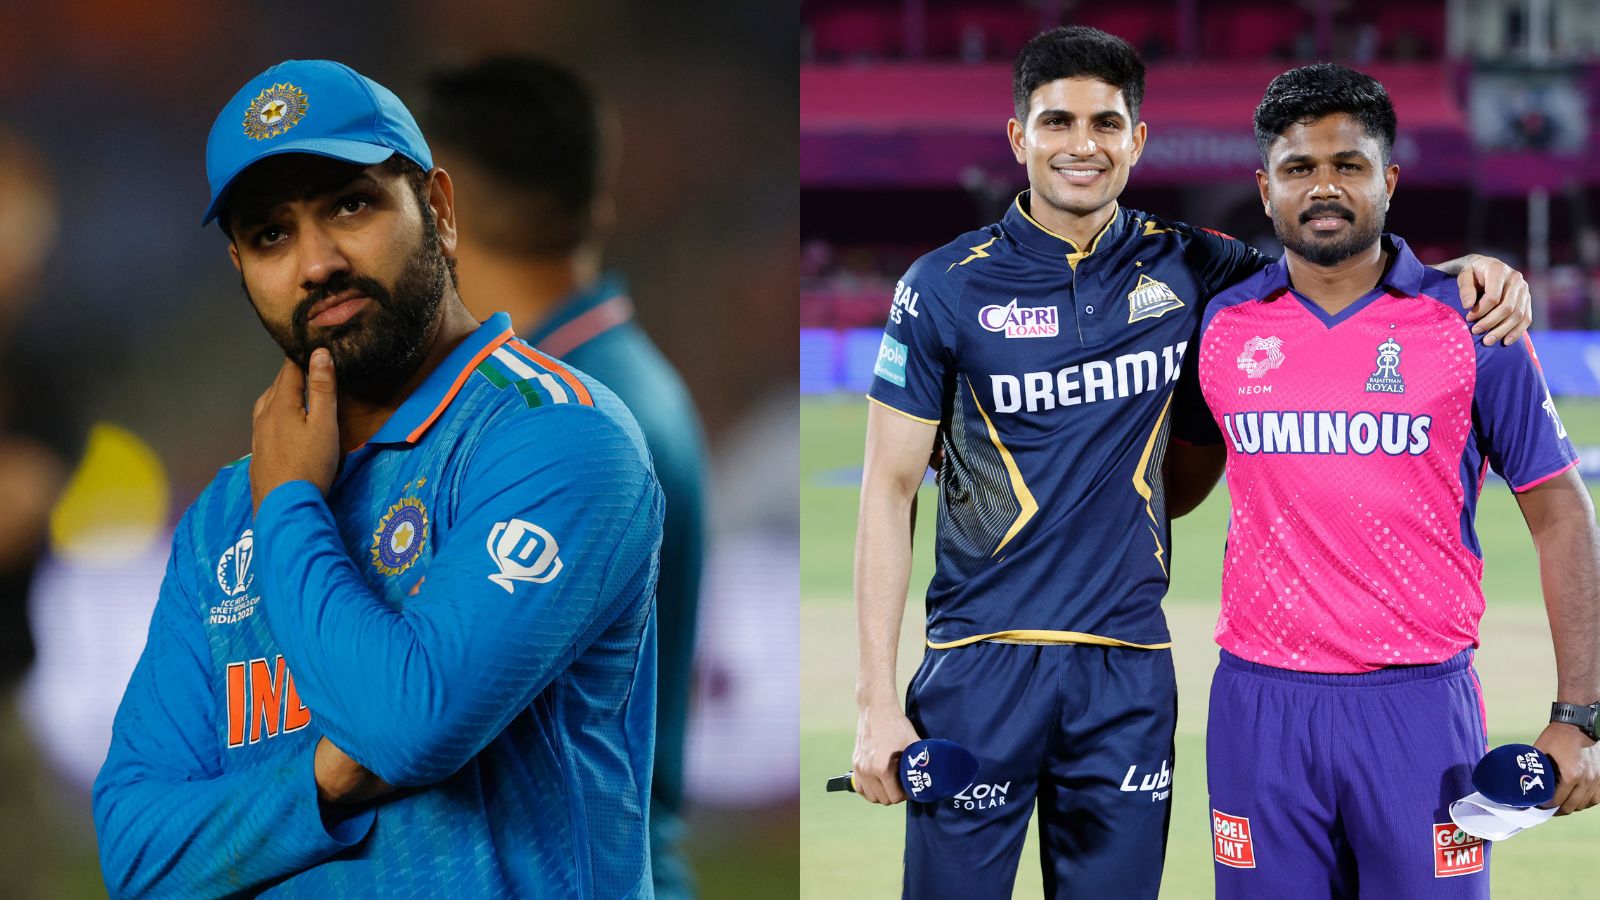 शुभमन गिल और संजू सैमसन होंगे भारत की वर्ल्ड कप टीम से बाहर? ध्रुव जुरेल और जितेश शर्मा की हो सकती है सरप्राइज एंट्री